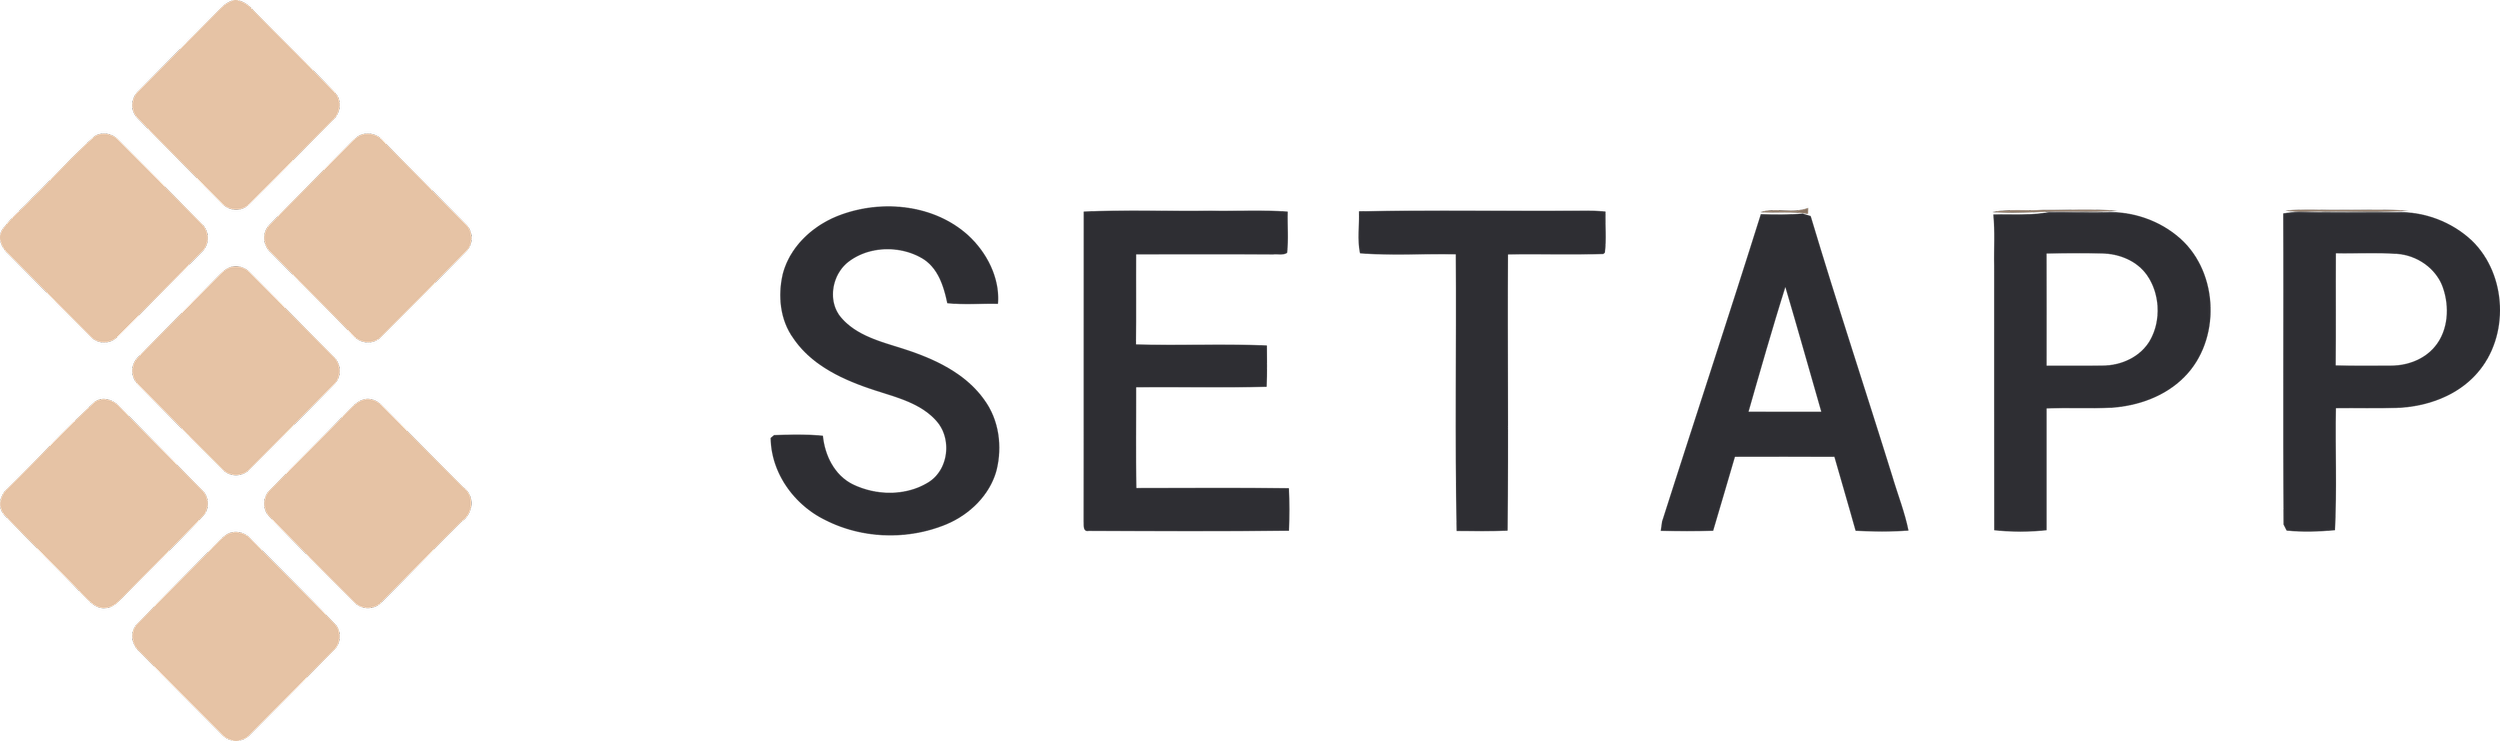 Setapp_Logo (1).png